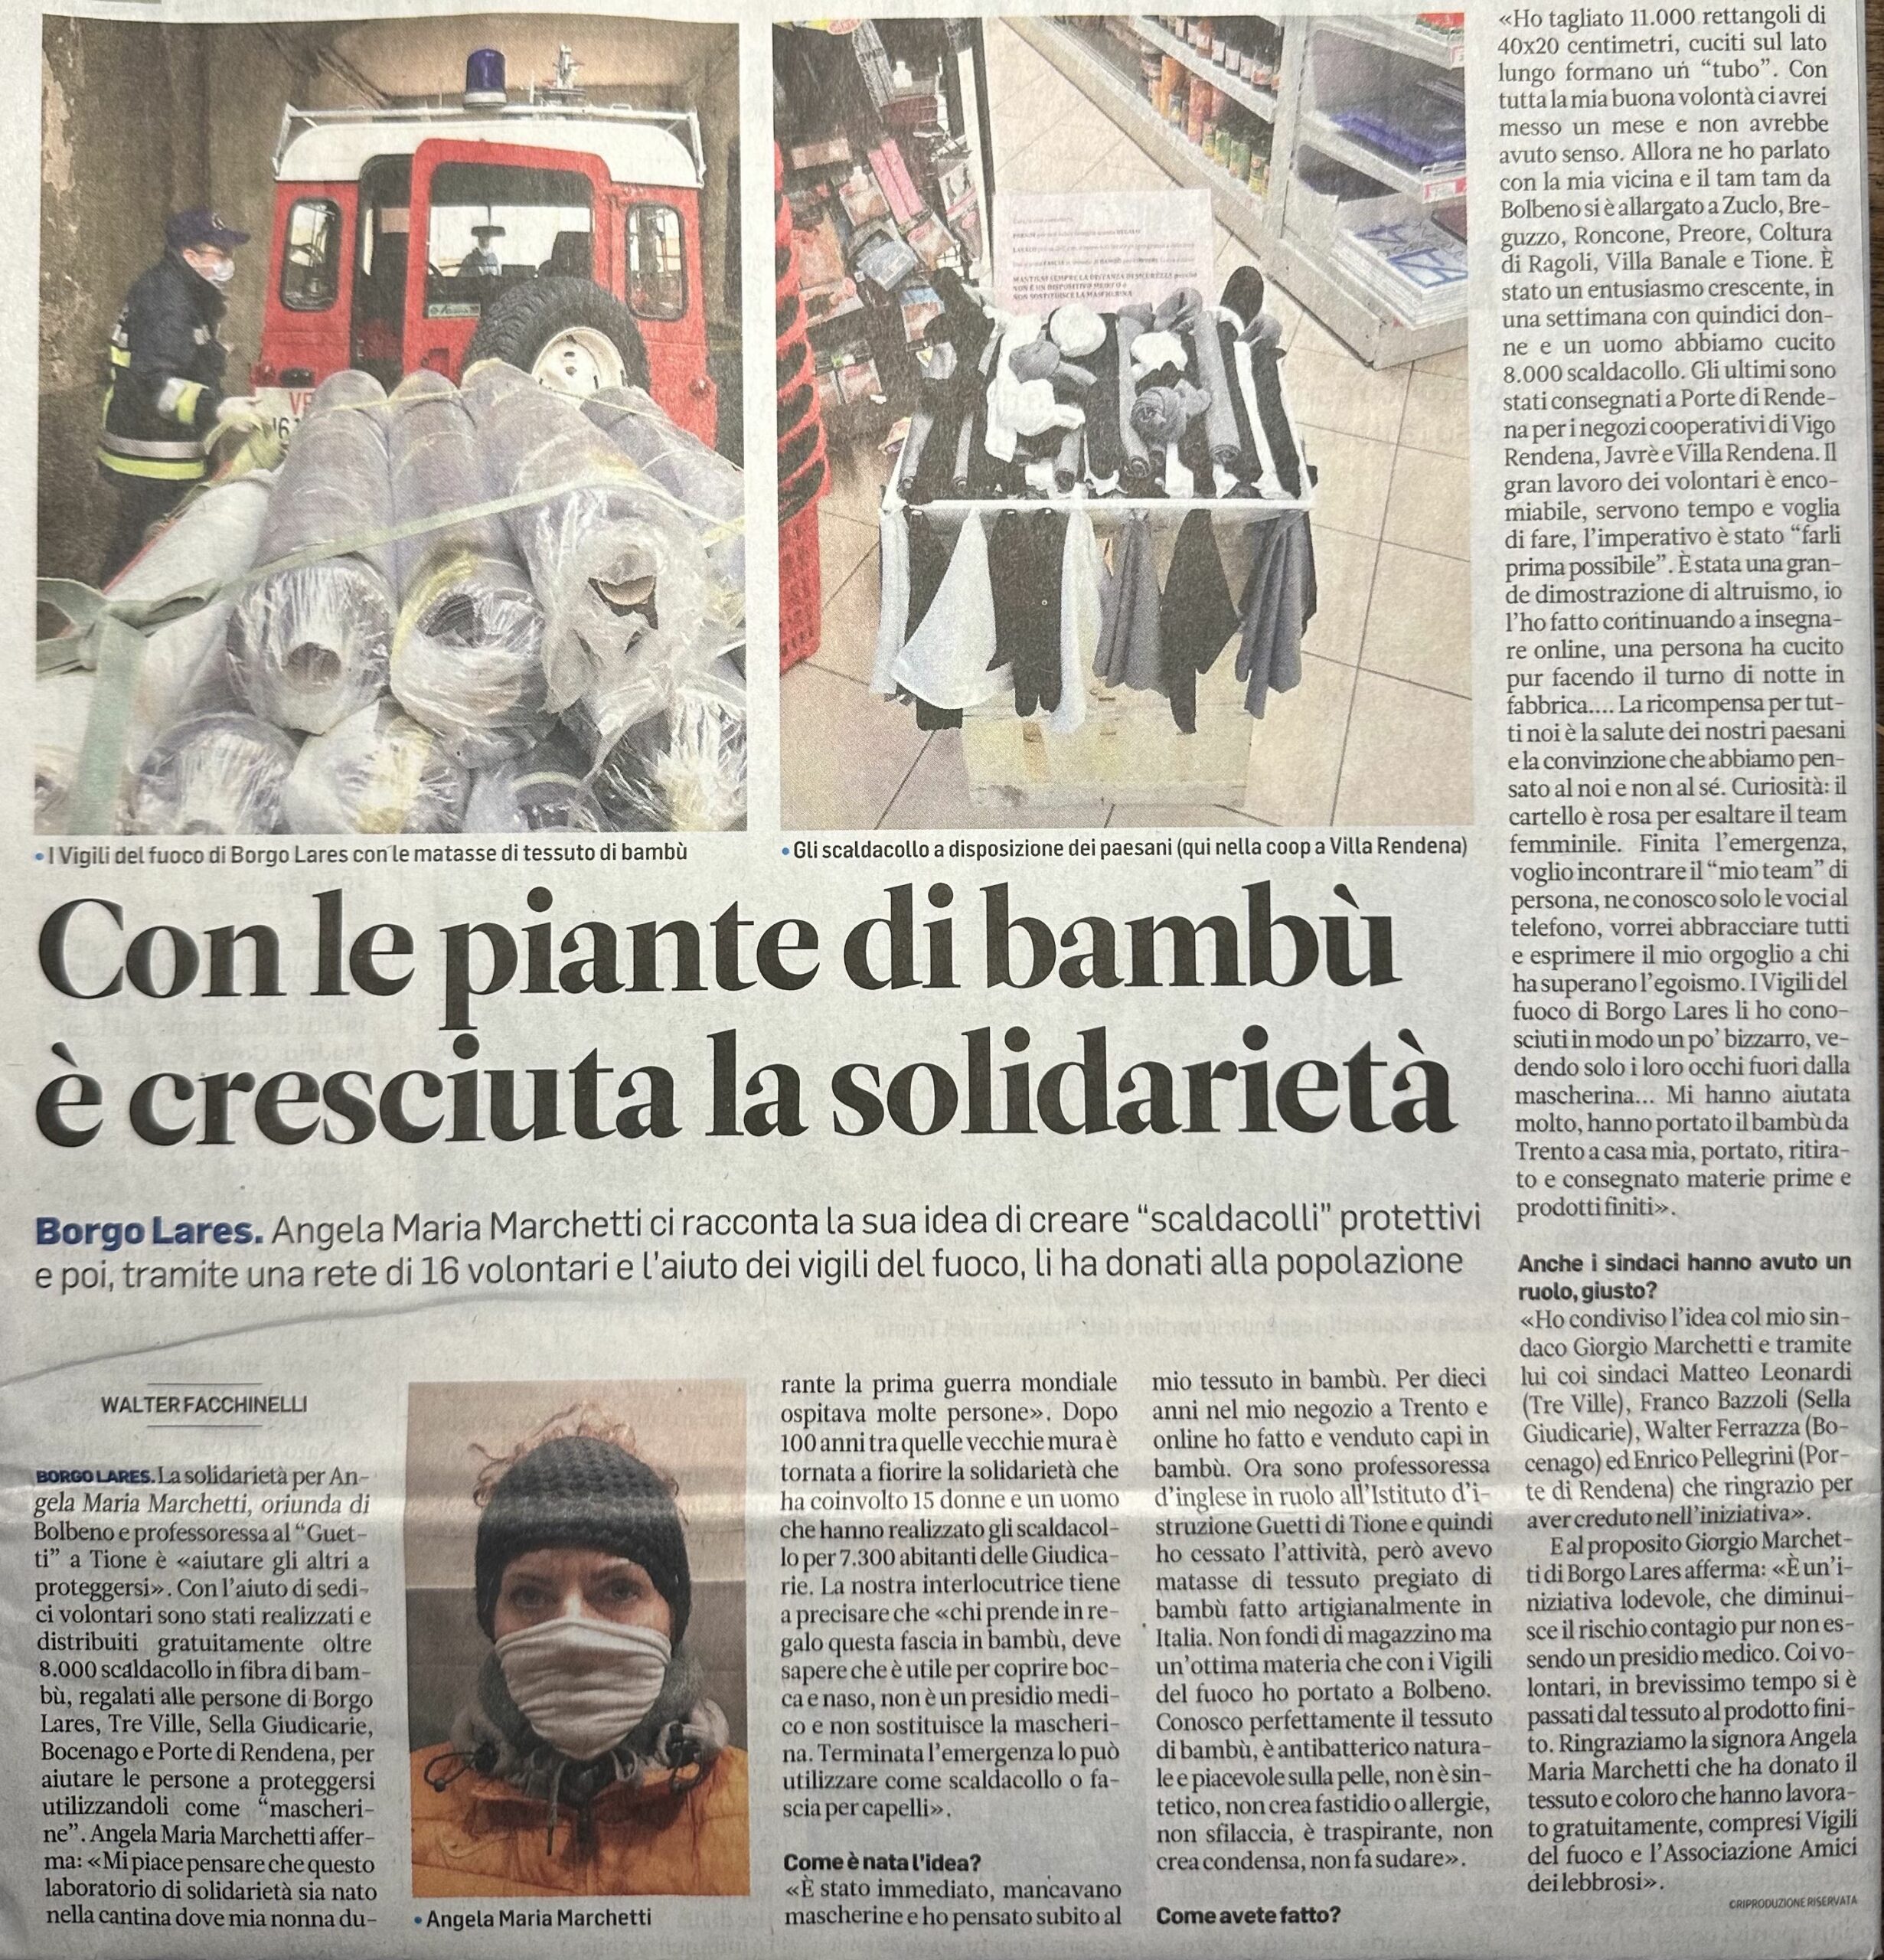 bambù solidale articolo pubblicato sul quotidiano Trentino durante la pandemia